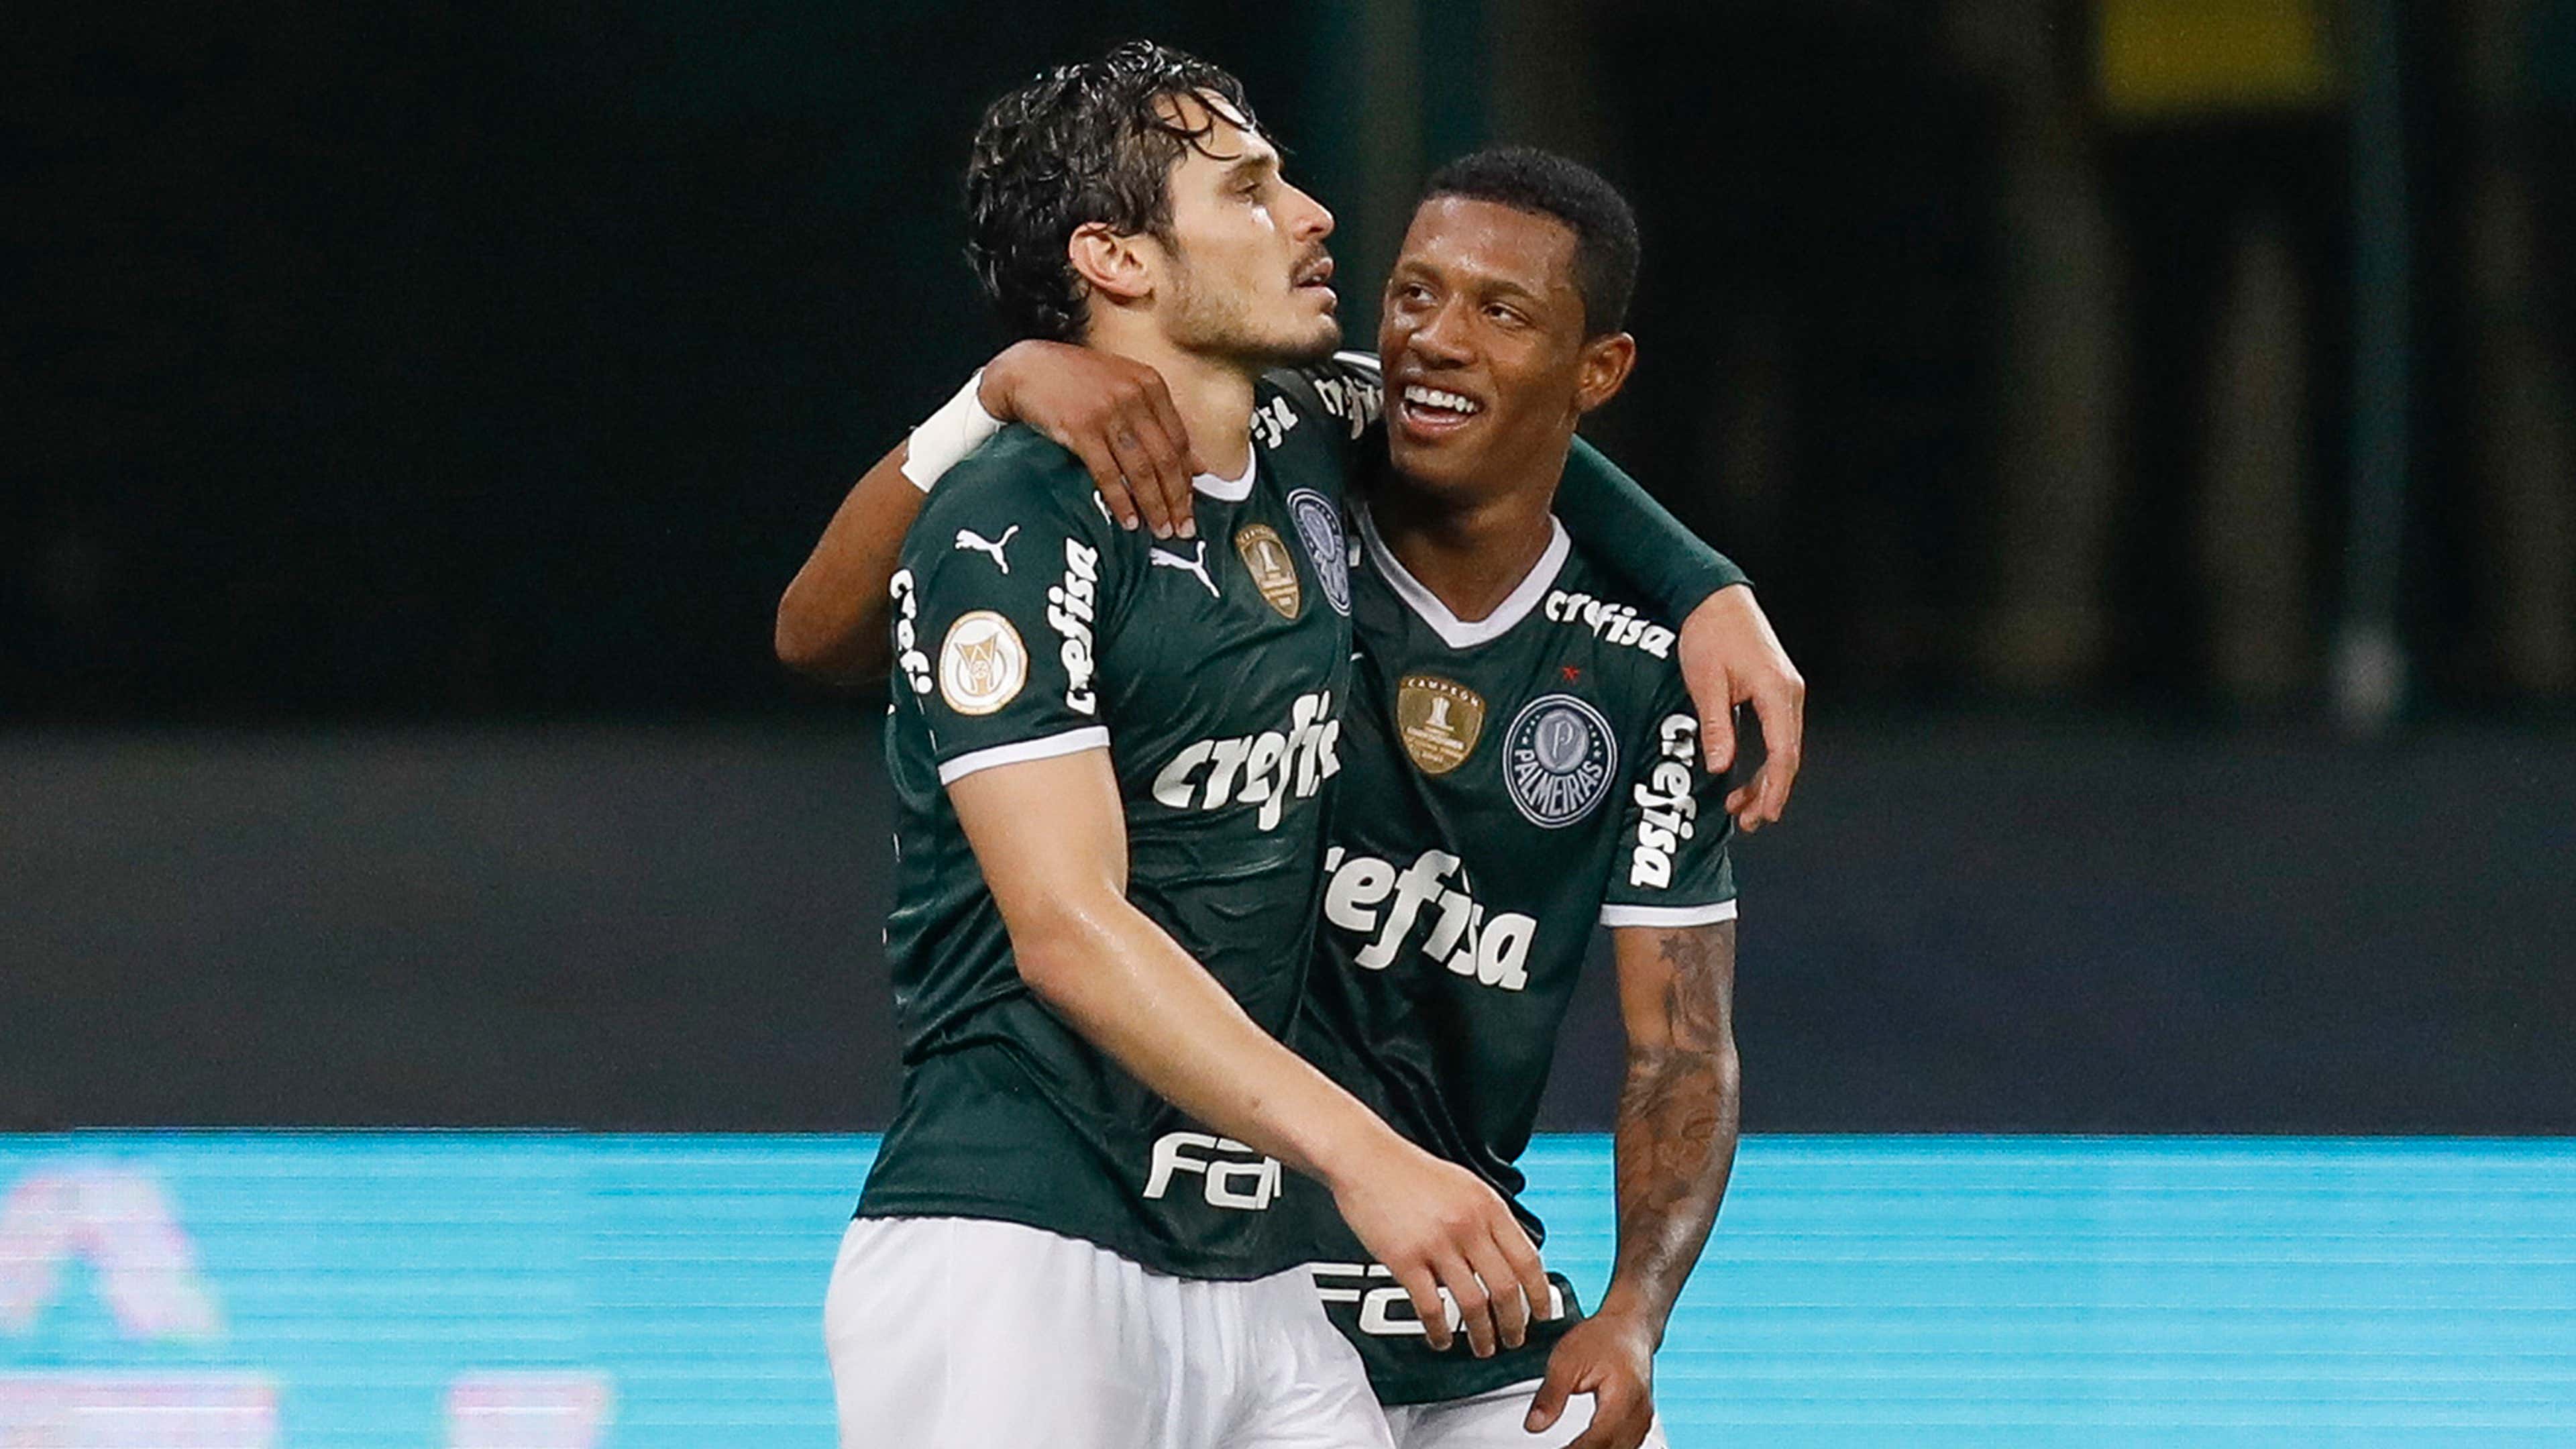 Próximos jogos do Palmeiras: onde assistir ao vivo, datas, horários